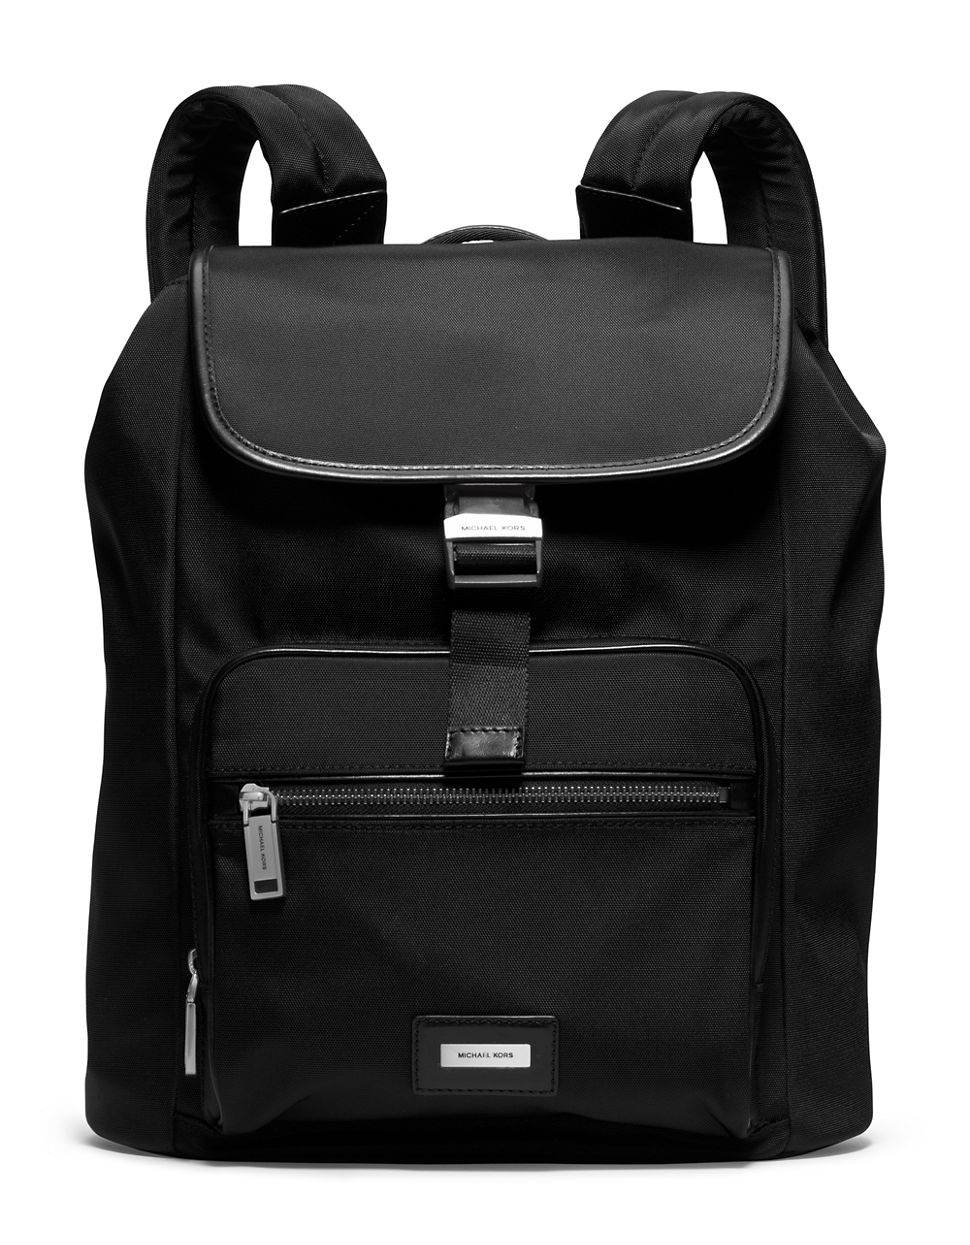 Michael Kors Windsor Nylon Backpack in Black for Men - Lyst